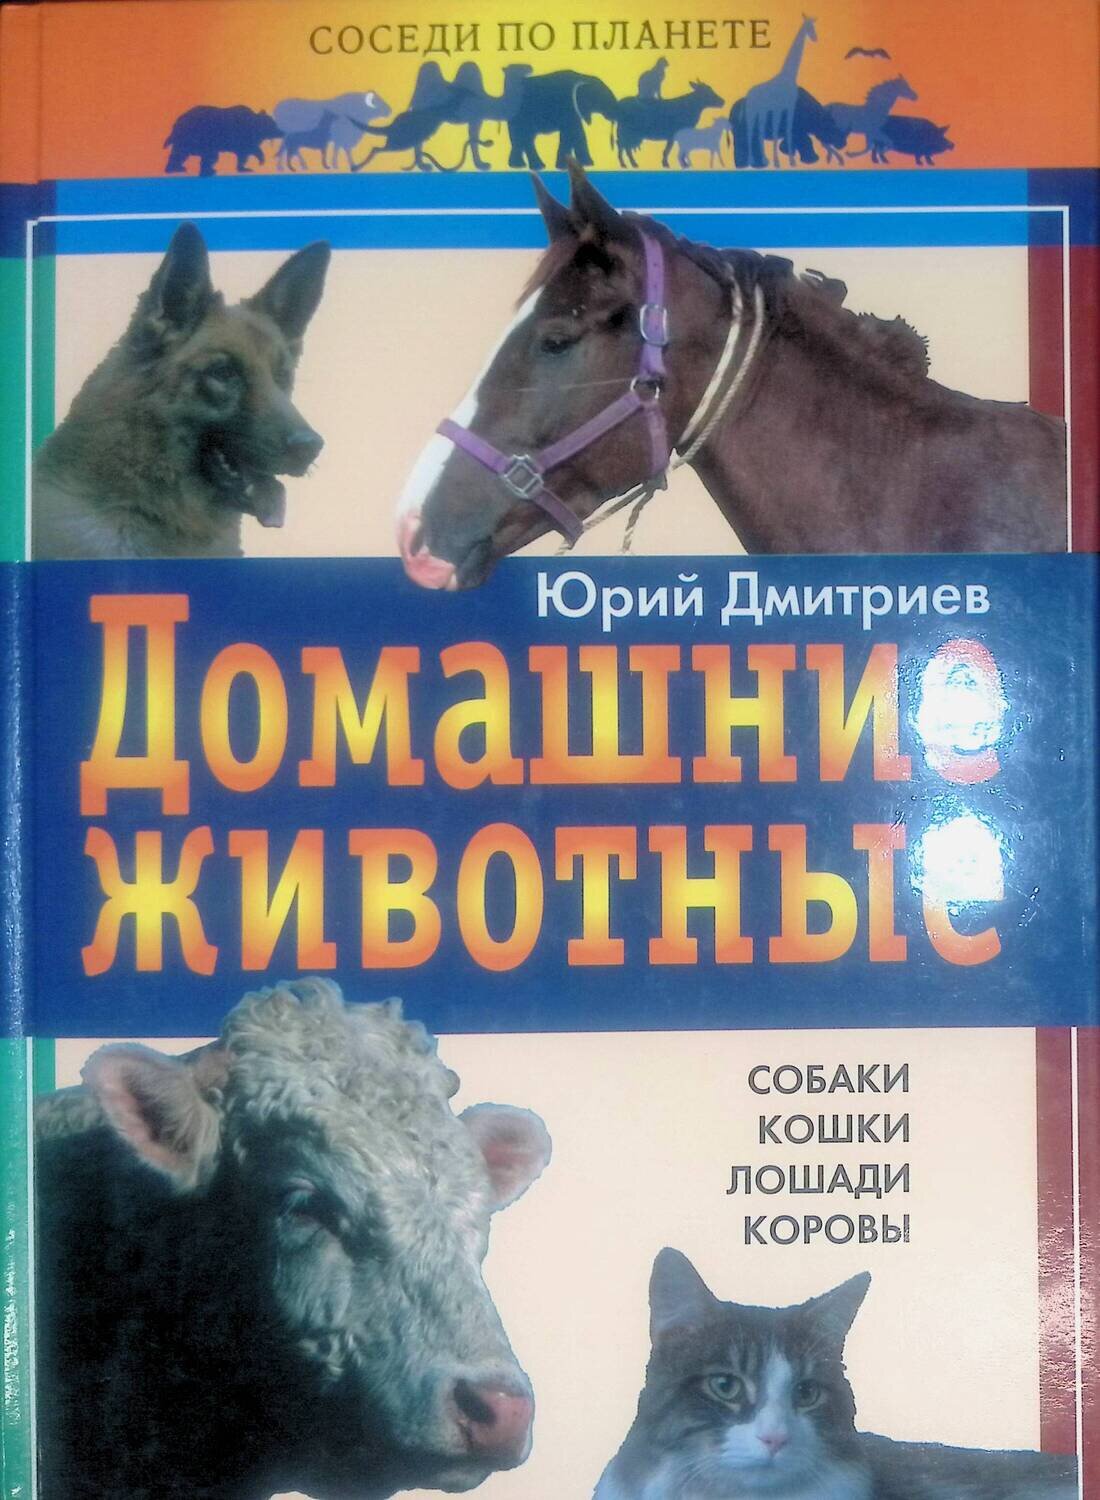 Домашние животные; Дмитриев Юрий Дмитриевич